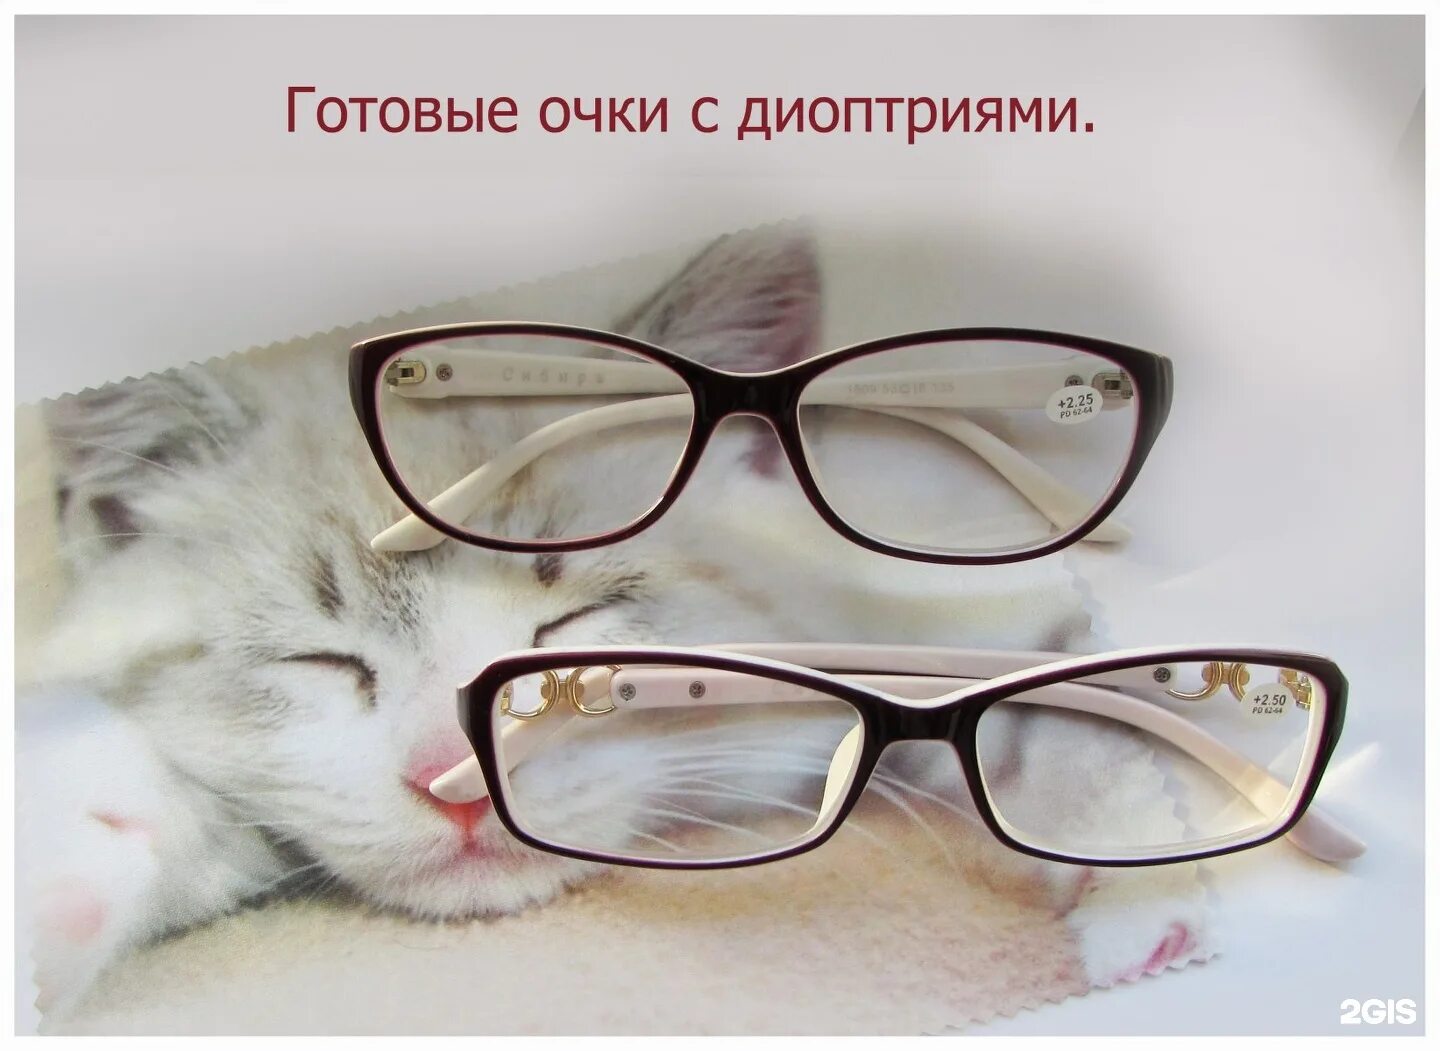 Реклама очков для зрения. Очки готовые. Реклама для оптики очки. Очки реклама баннер.